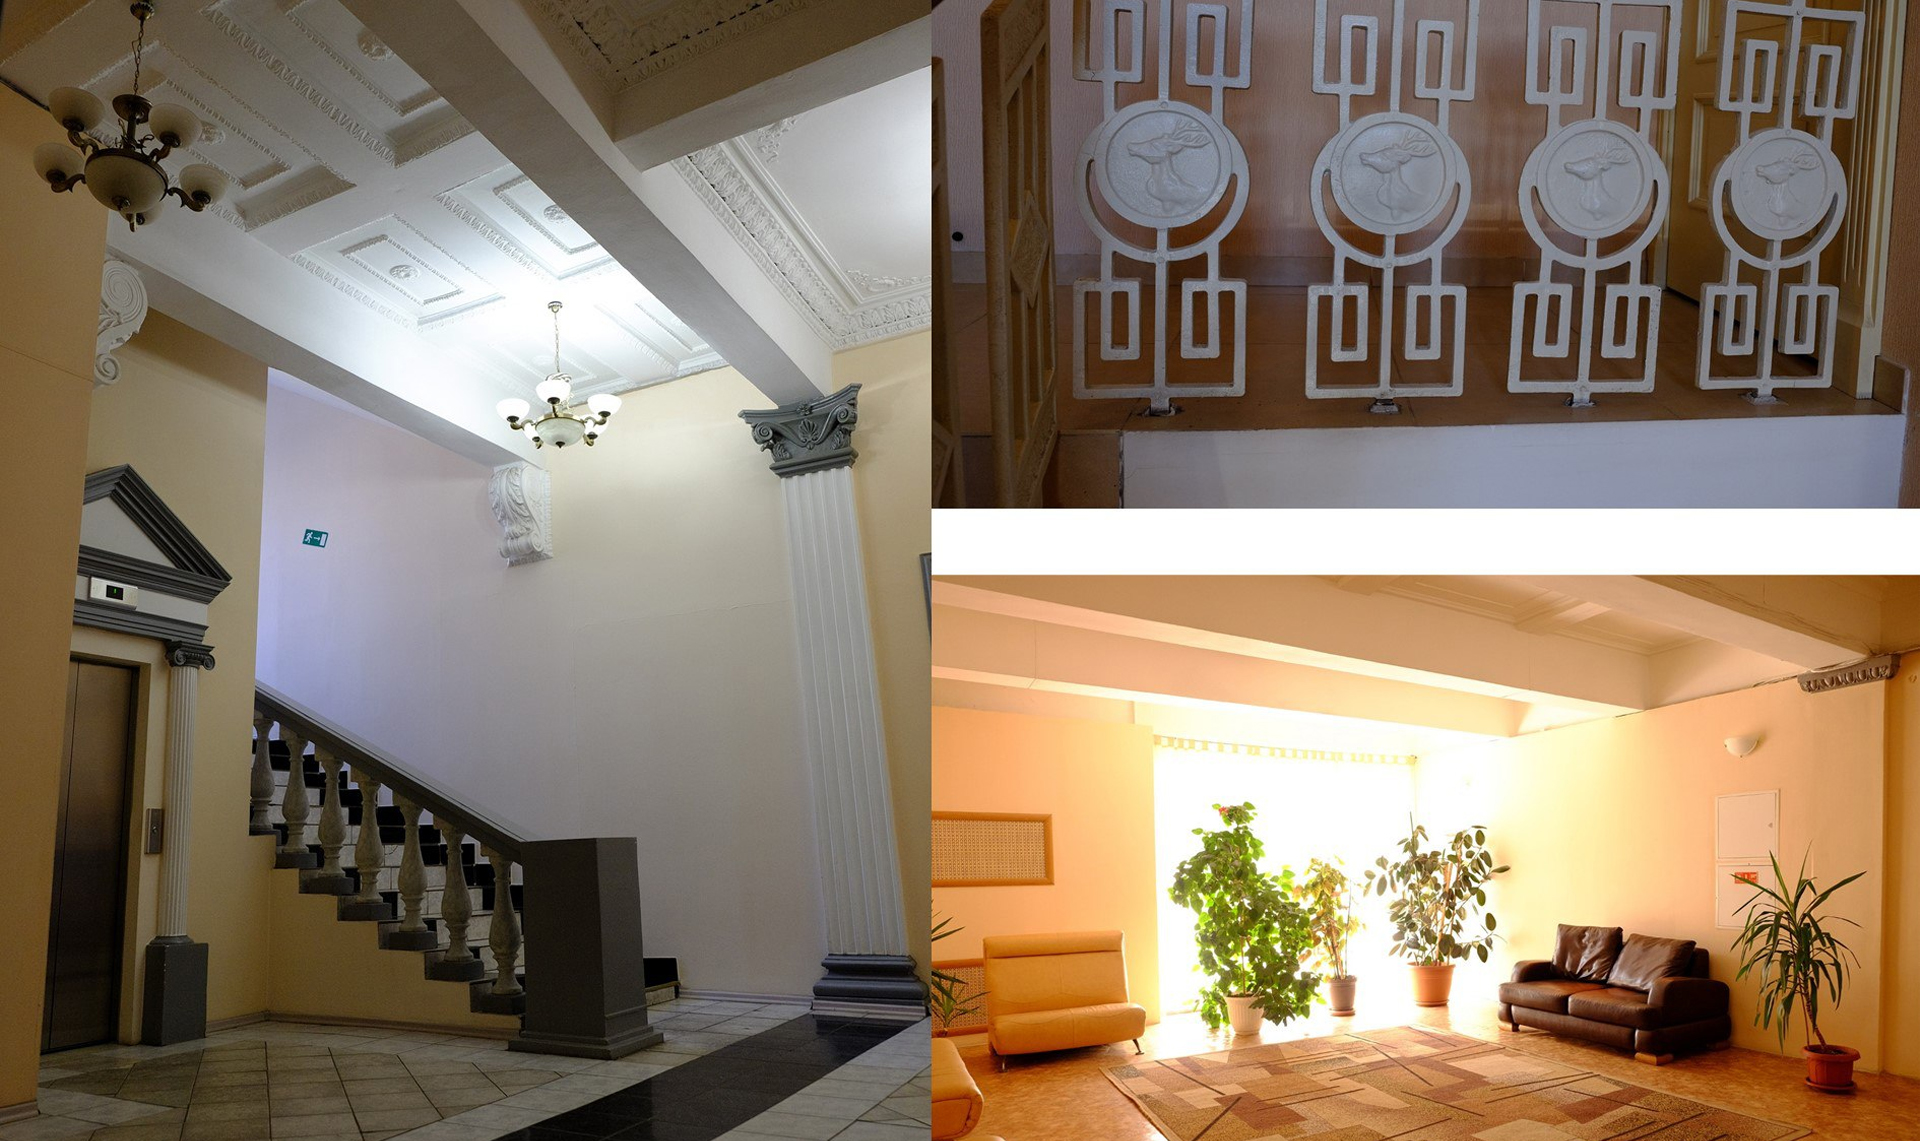 Гостиницу в центре Челябинска включили в список объектов культурного наследия регионального значения